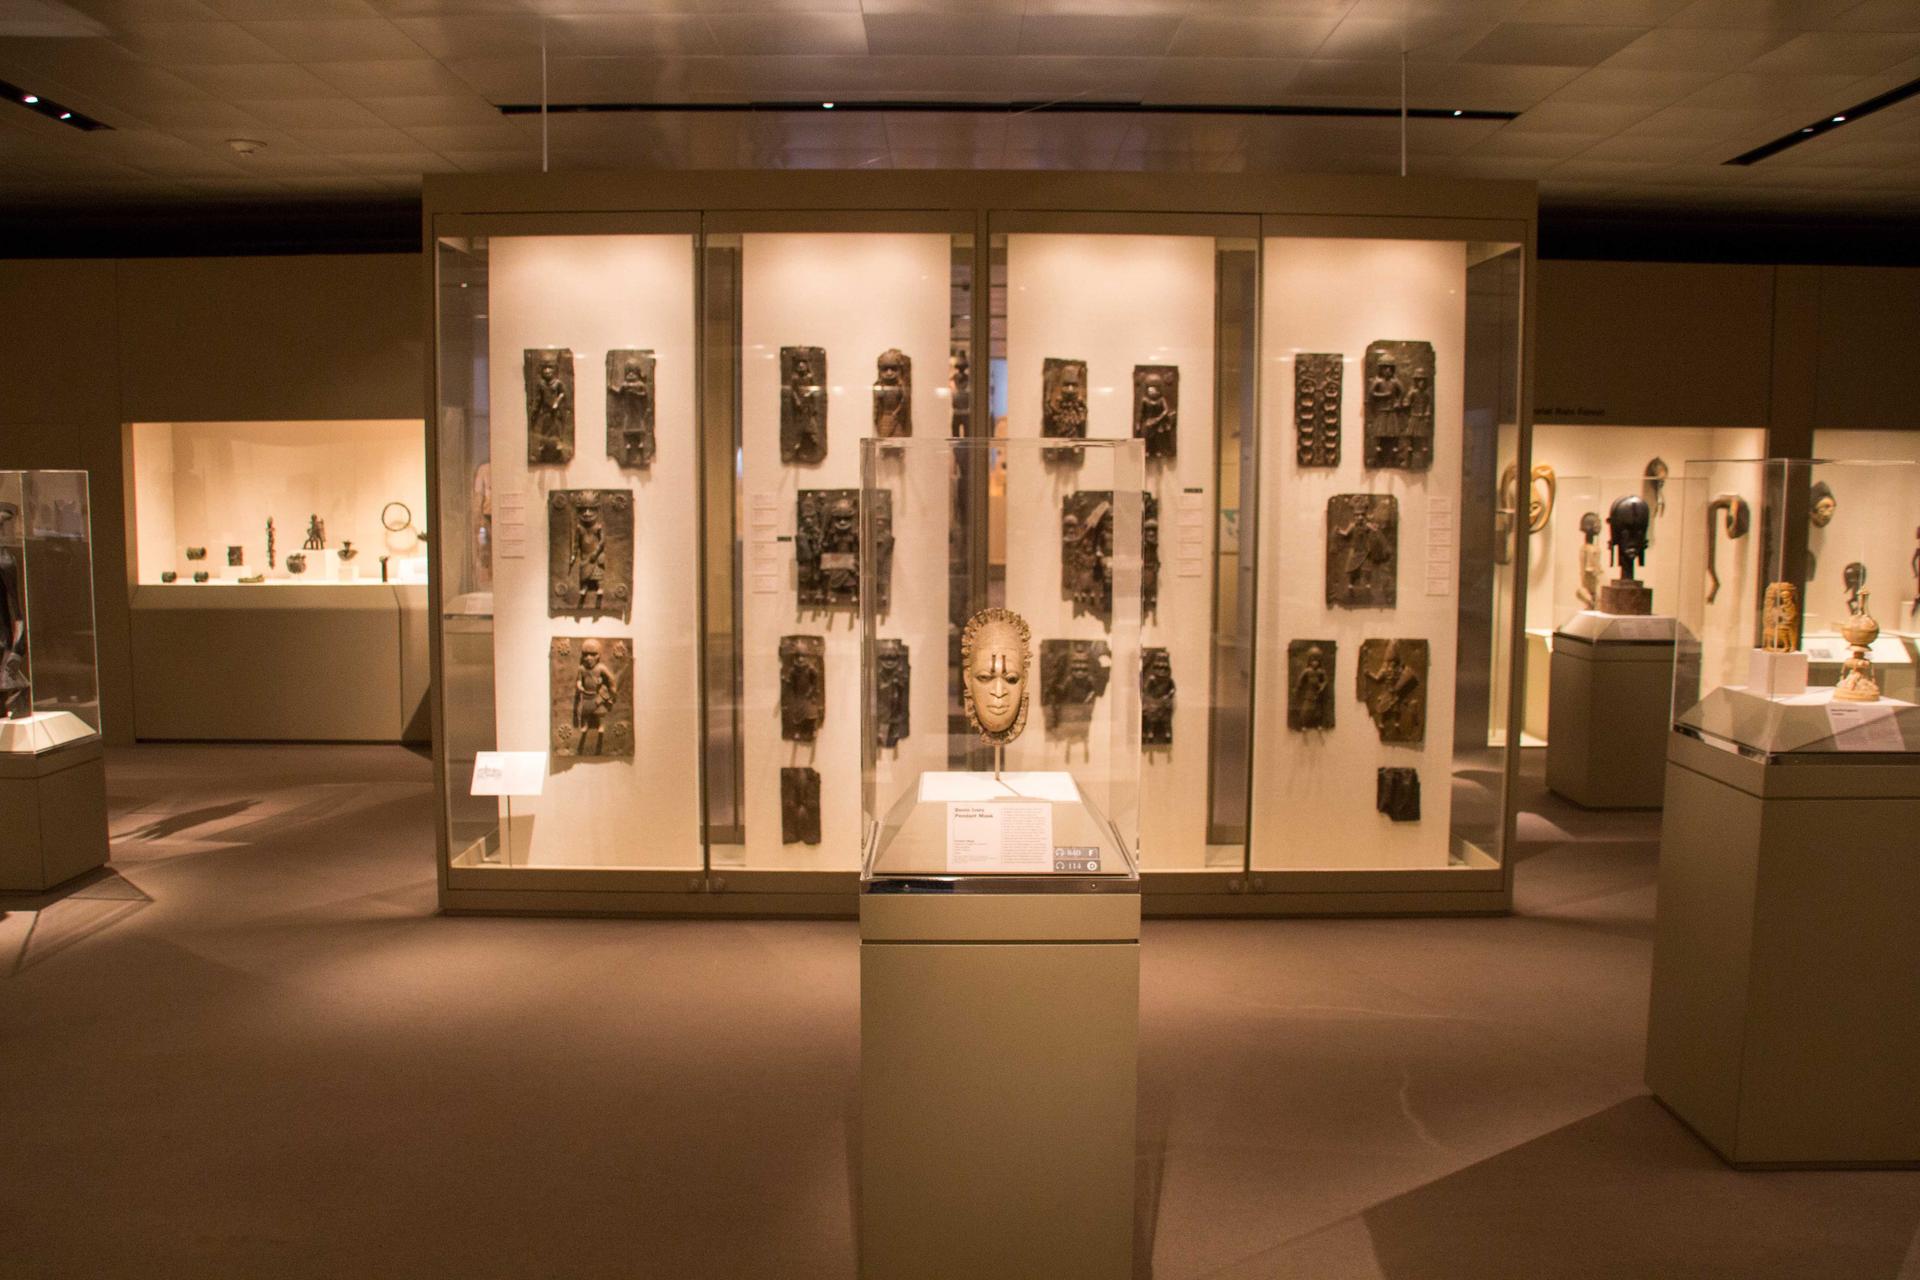 Benin bronzes at the Metropolitan Museum of Art in New York City. Photo was taken in 2017.